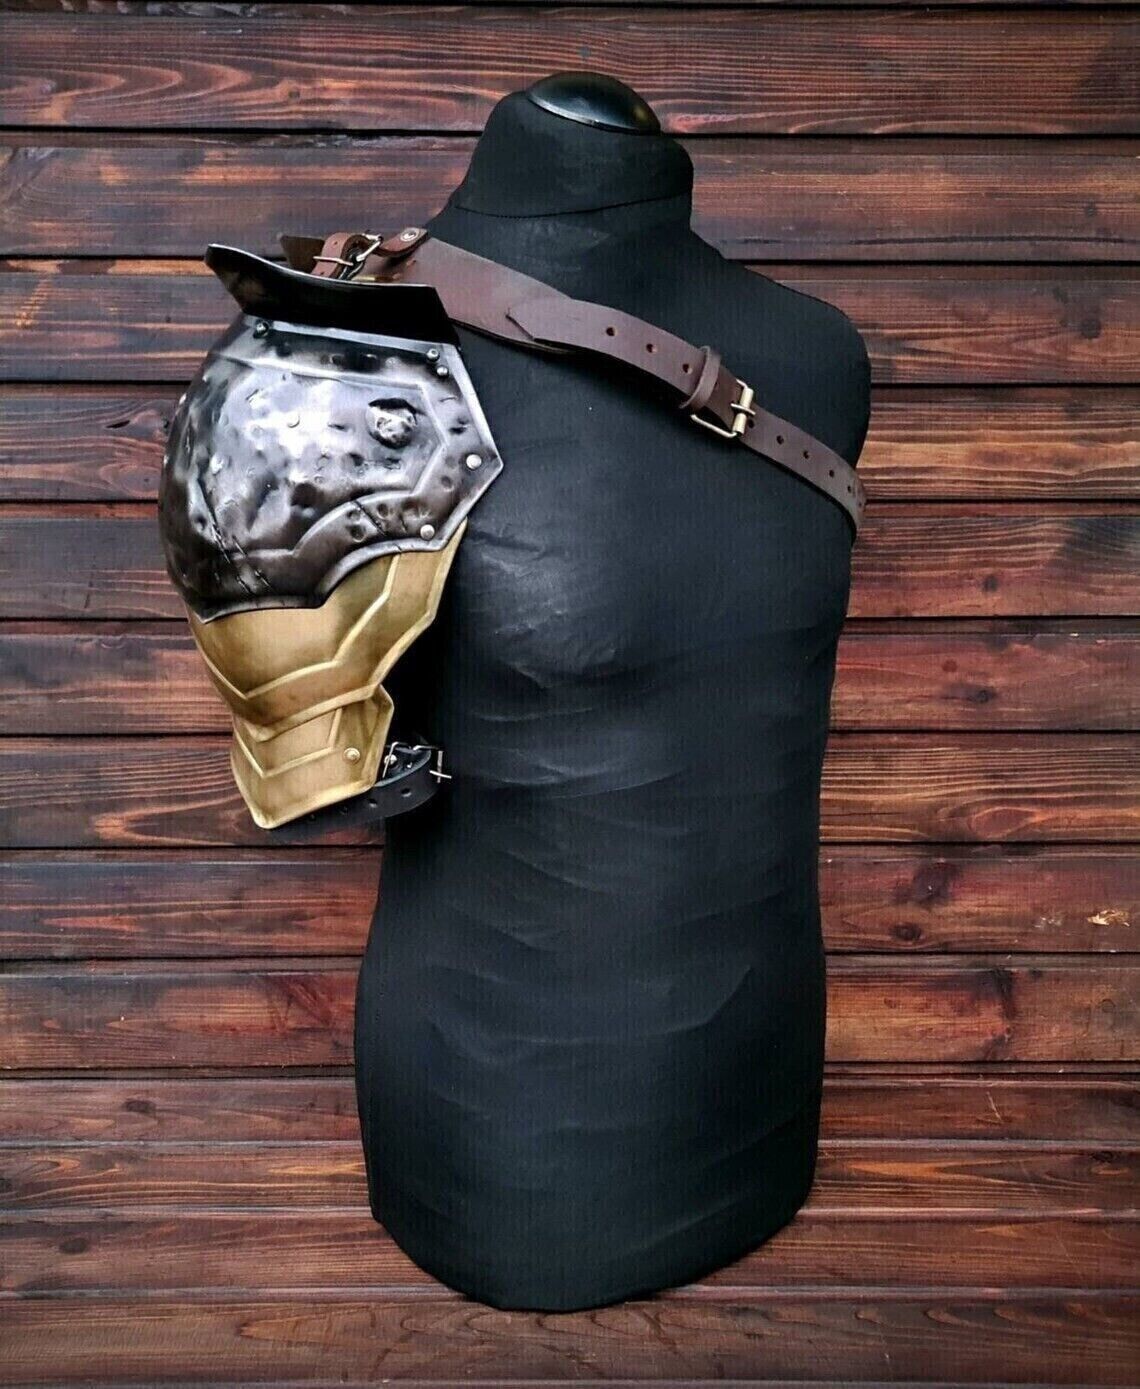 Fantasy warrior shoulder armor, blackened and golden shoulder